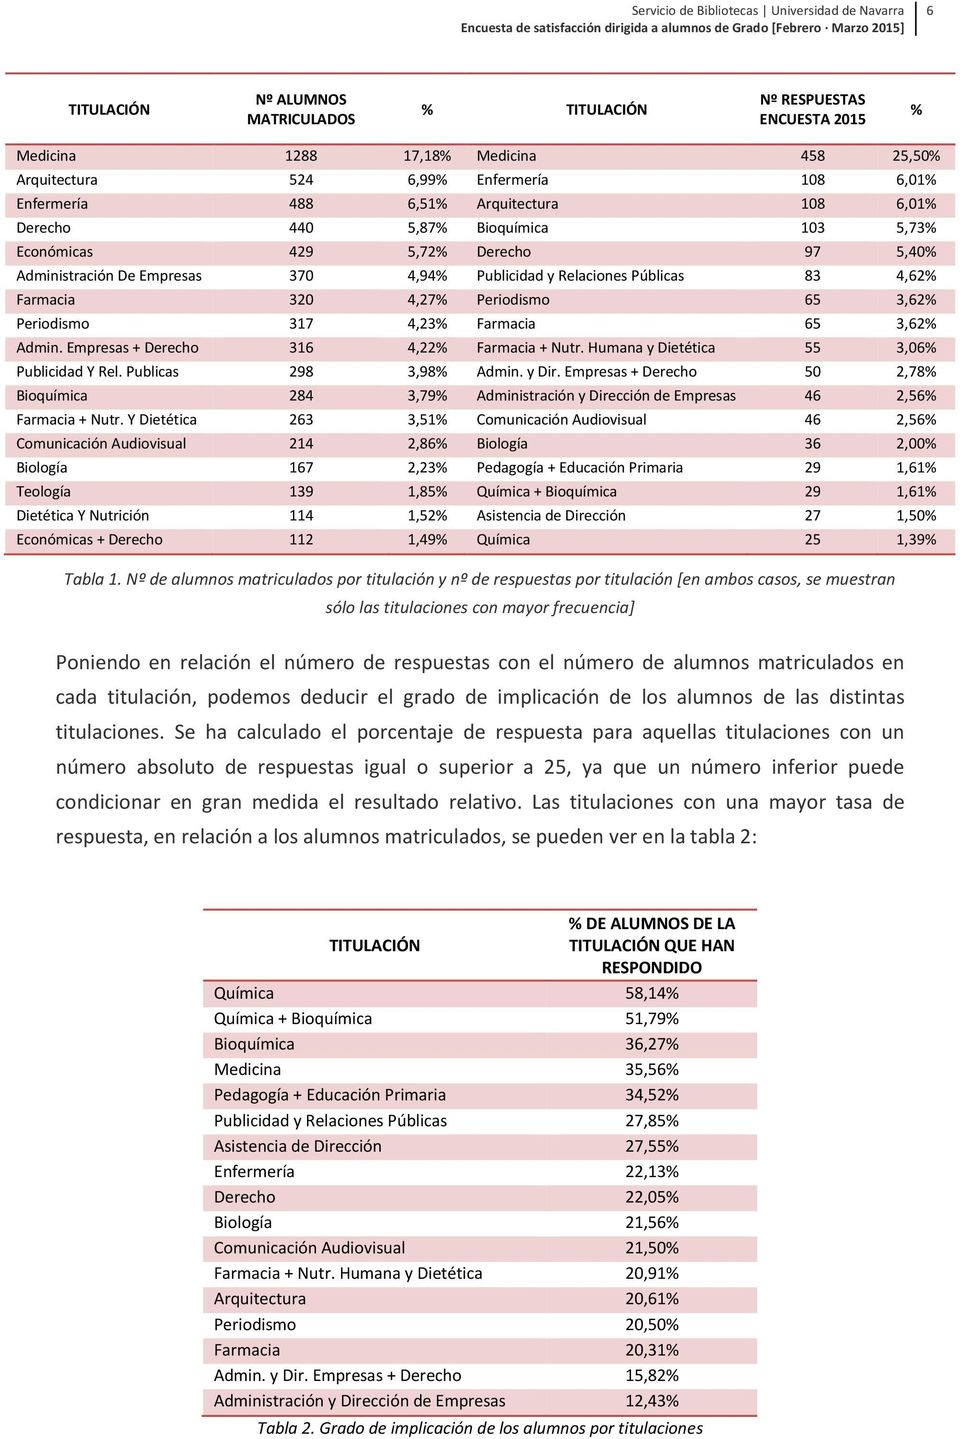 3,62% Periodismo 317 4,23% Farmacia 65 3,62% Admin. Empresas + Derecho 316 4,22% Farmacia + Nutr. Humana y Dietética 55 3,06% Publicidad Y Rel. Publicas 298 3,98% Admin. y Dir.